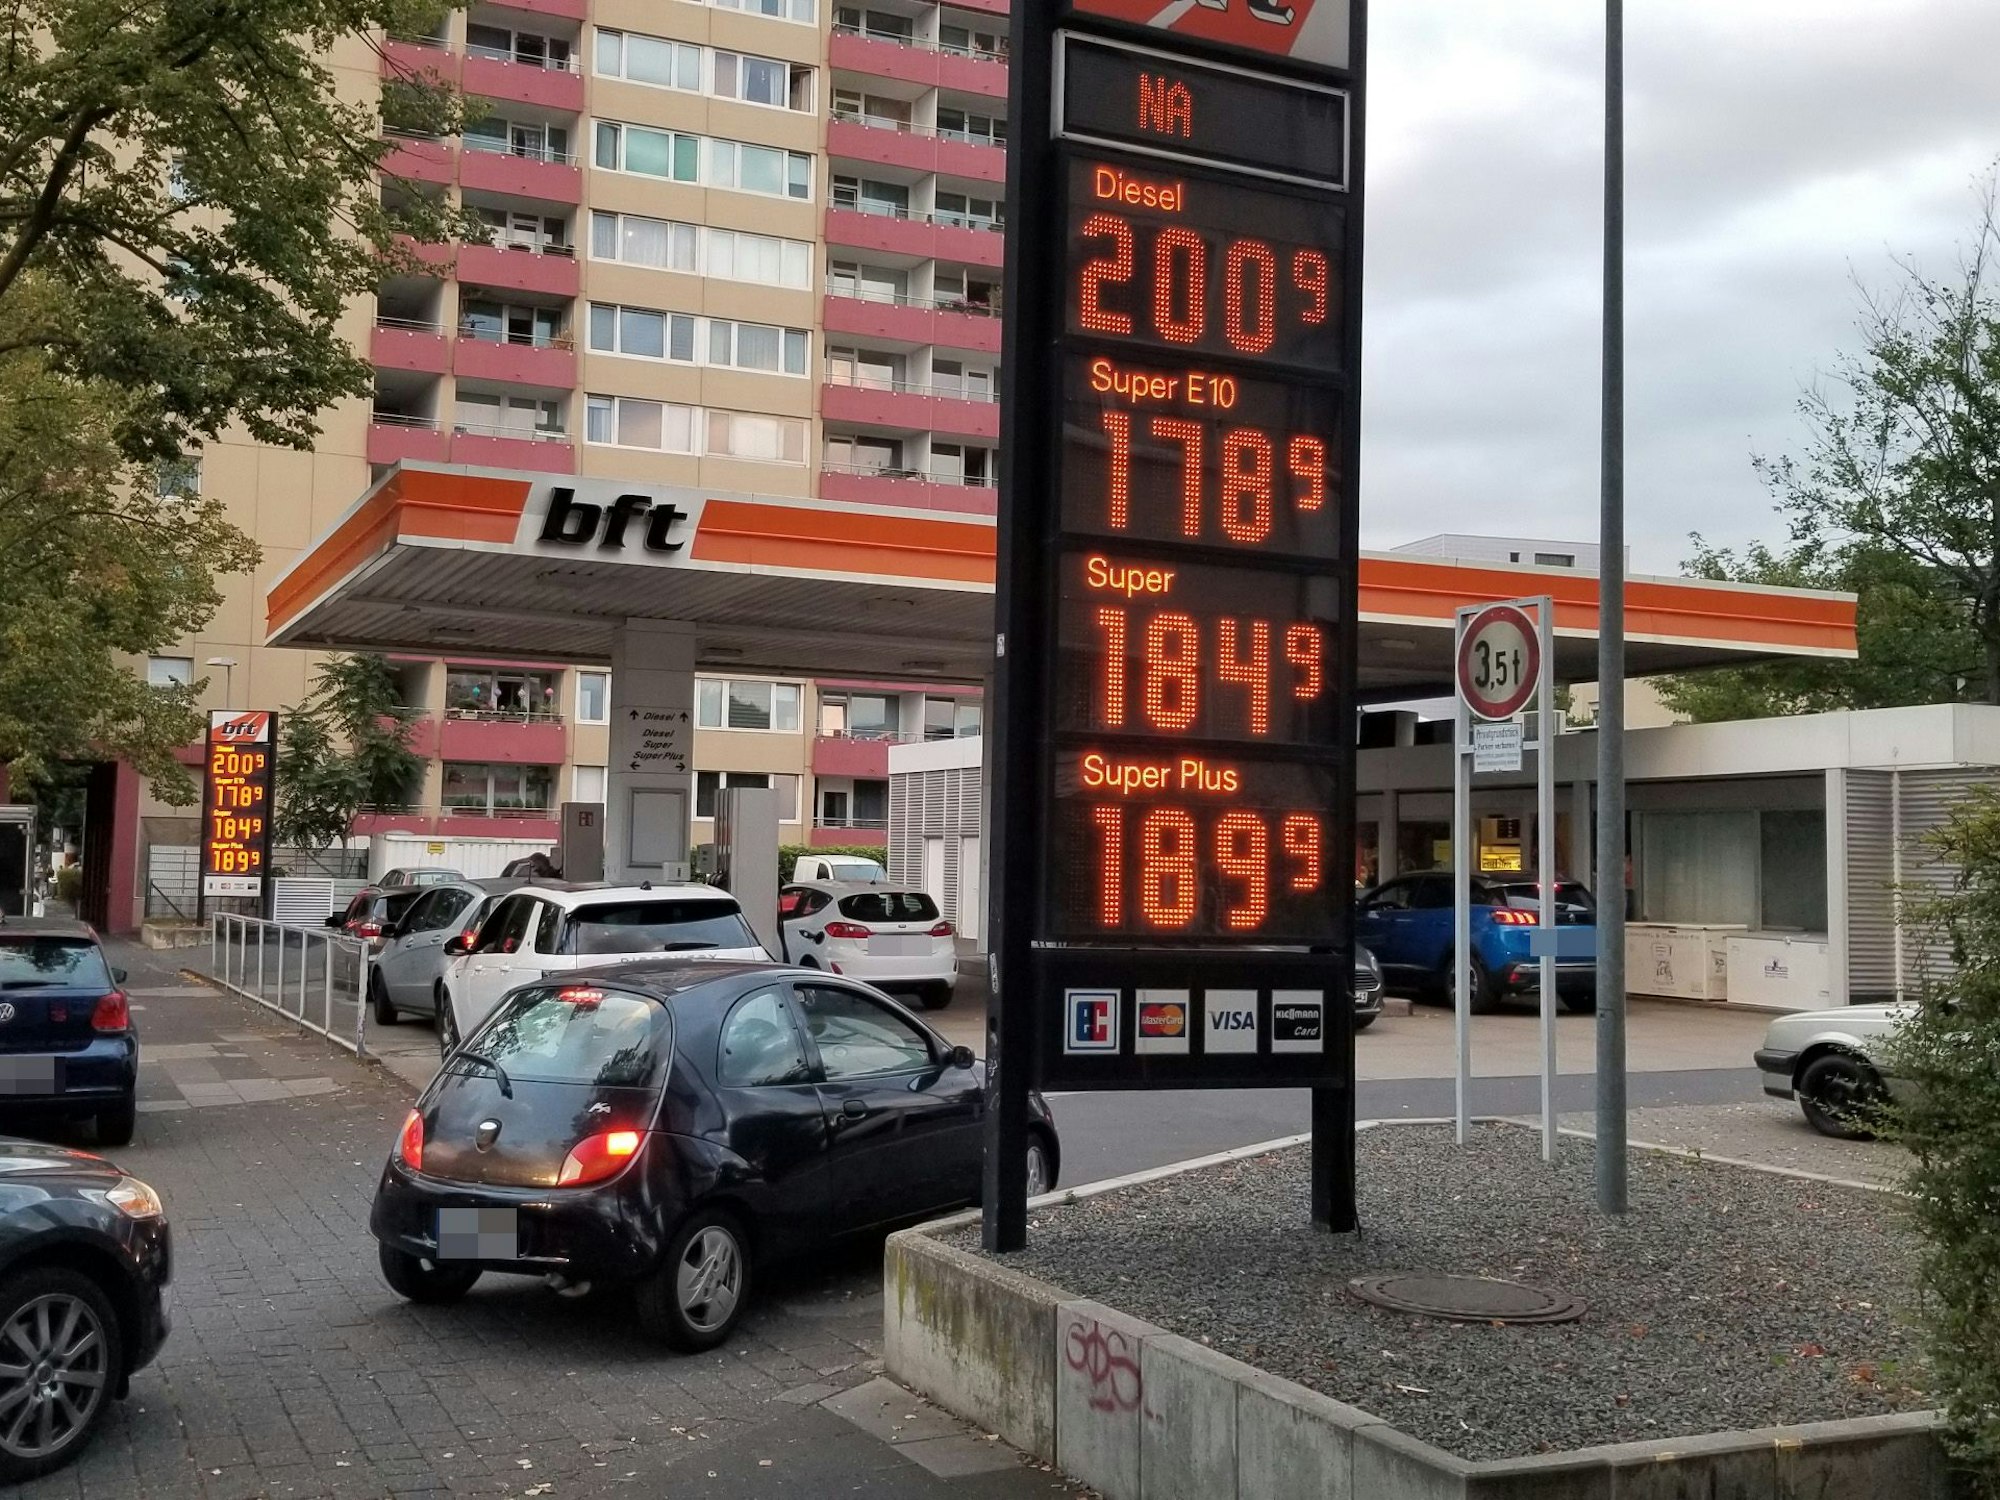 Die bft-Tankstelle in Köln-Niehl. Am Mittwochabend (31. August 2022) staute sich der Verkehr auf der Zufahrt. Der E10-Sprit-Preis lag gegen 19.45 Uhr bei 1,79 Euro.